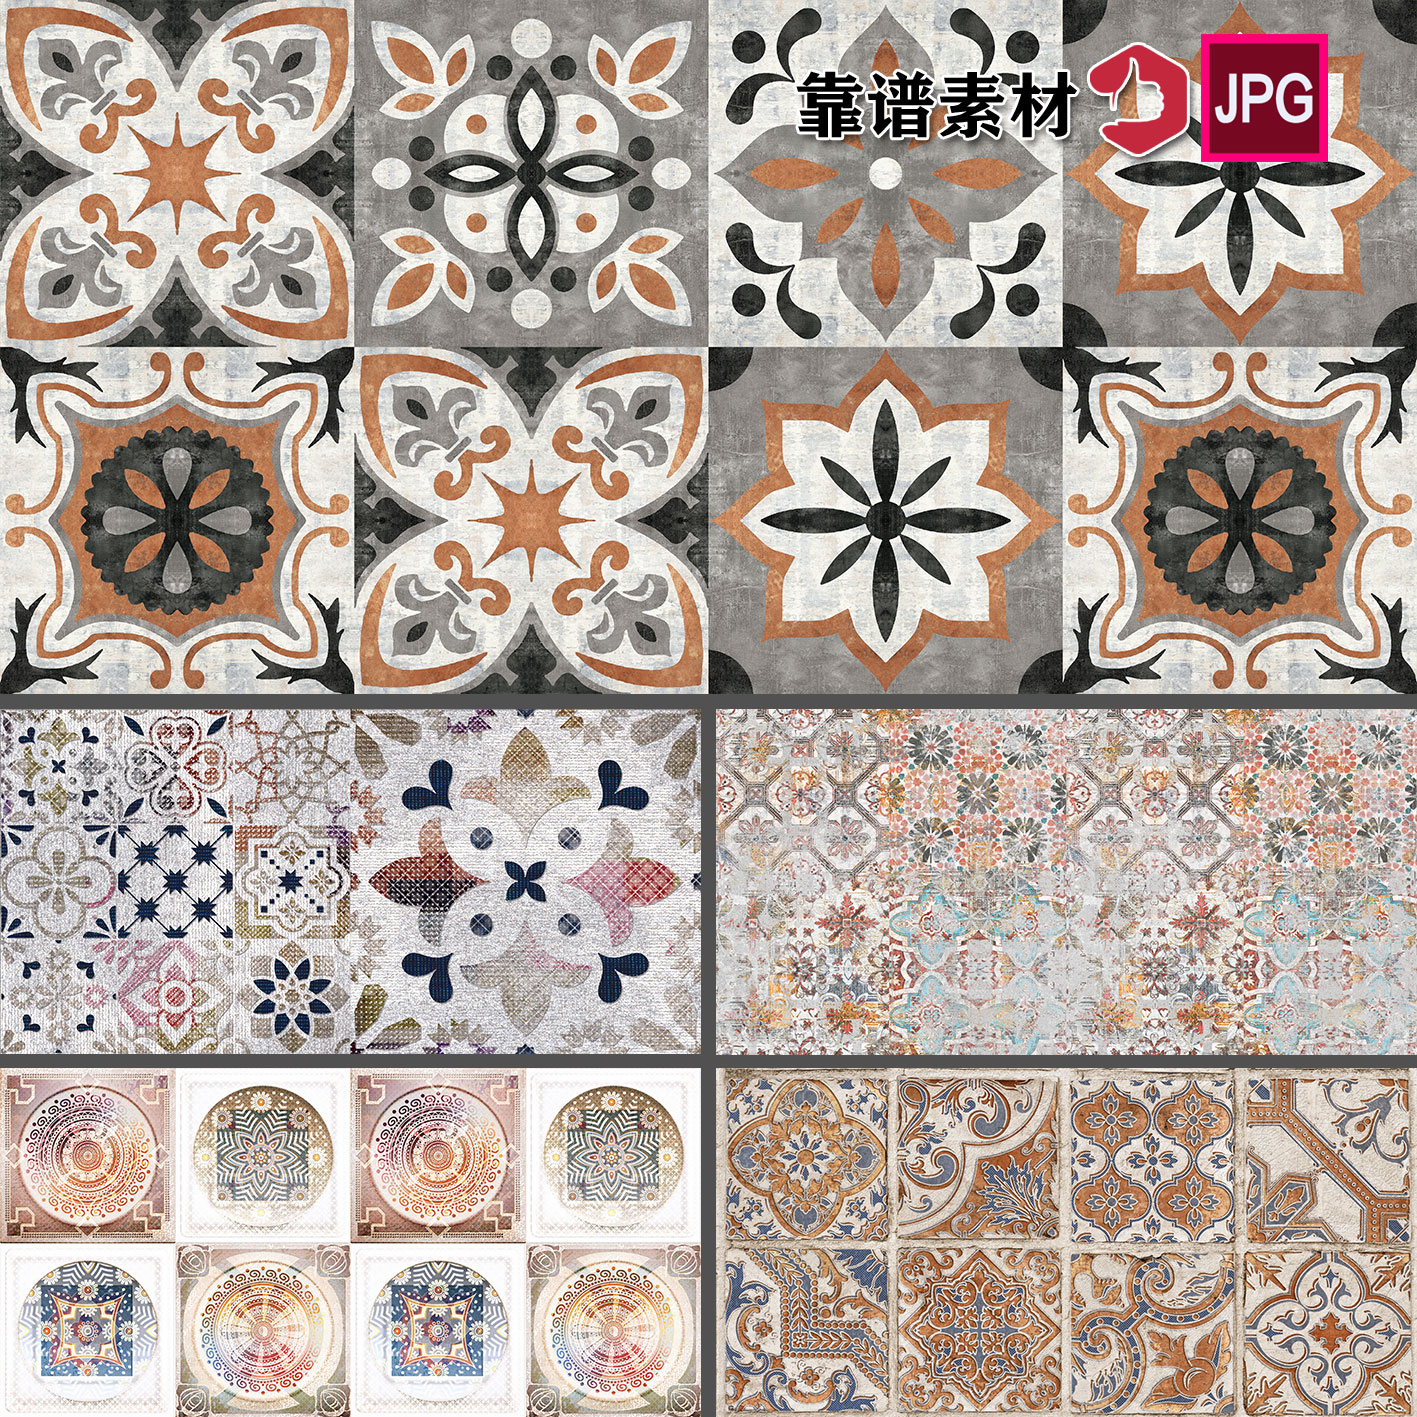 复古欧式花纹方块花砖拼花地毯贴纸贴图拼图高清图片设计素材